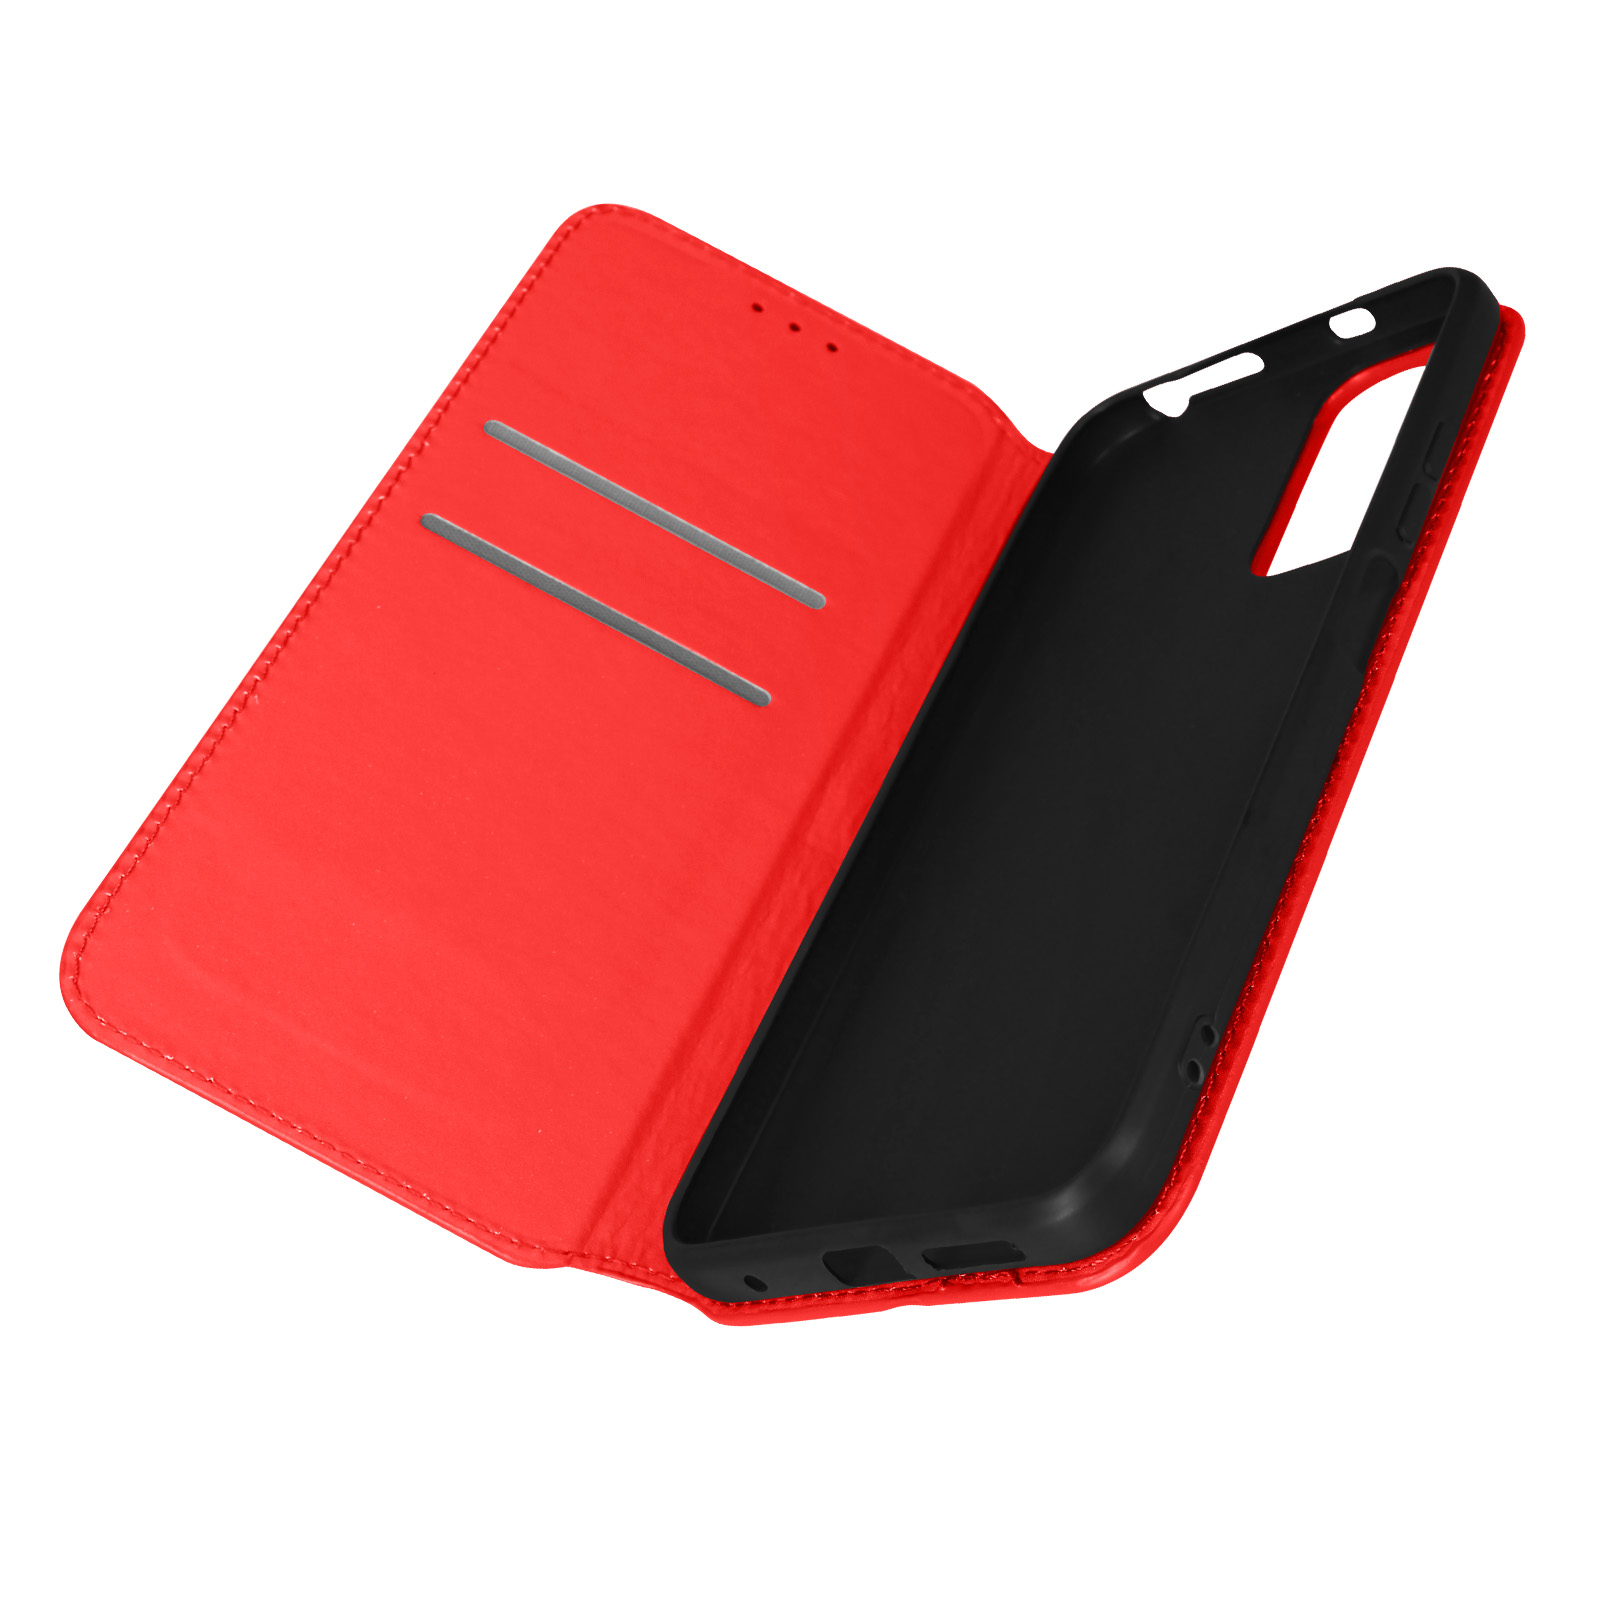 Pro Redmi Rot Note Xiaomi, AVIZAR 11 Series, Elec 5G, Bookcover,